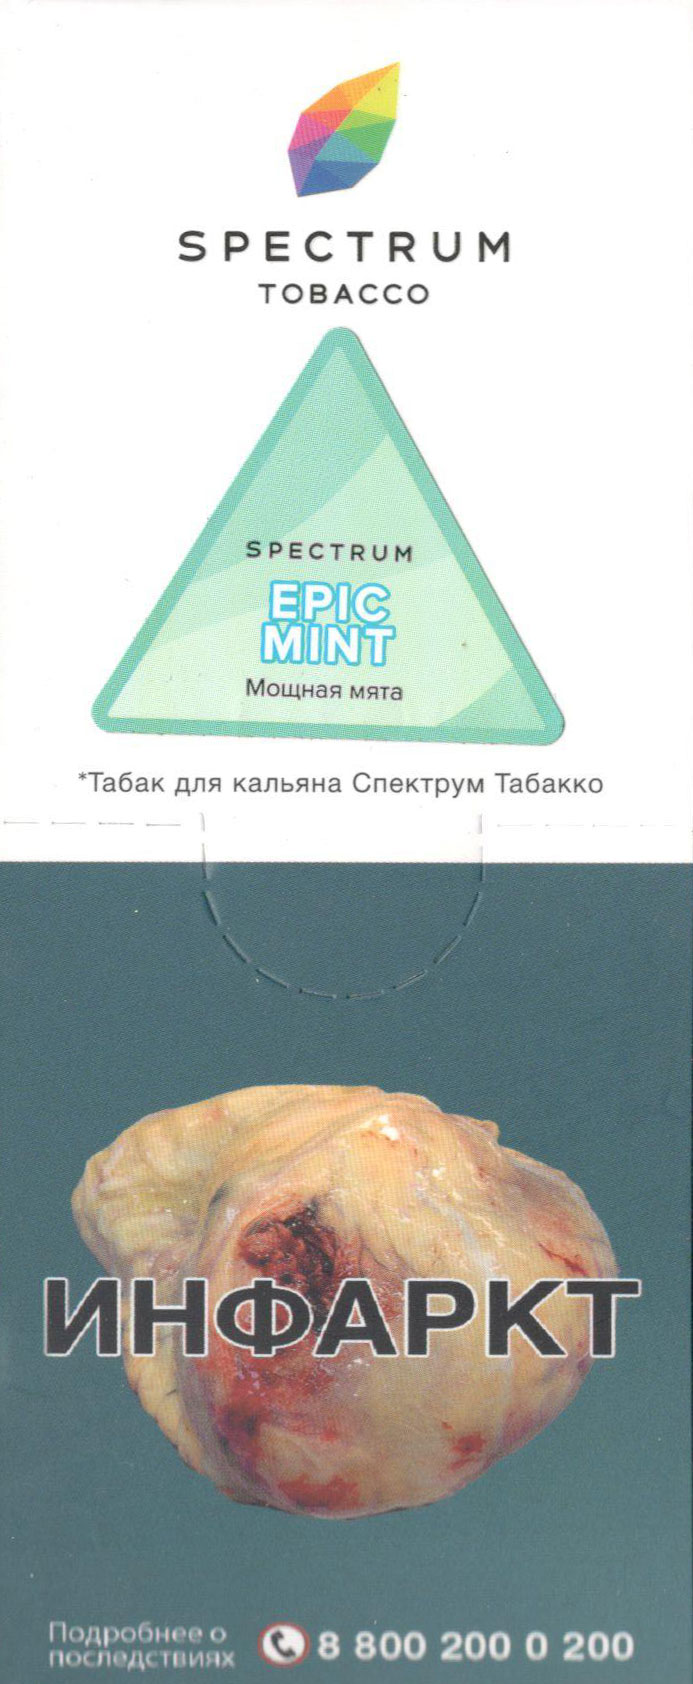 Spectrum- Мощная Мята (Epic Mint) фото